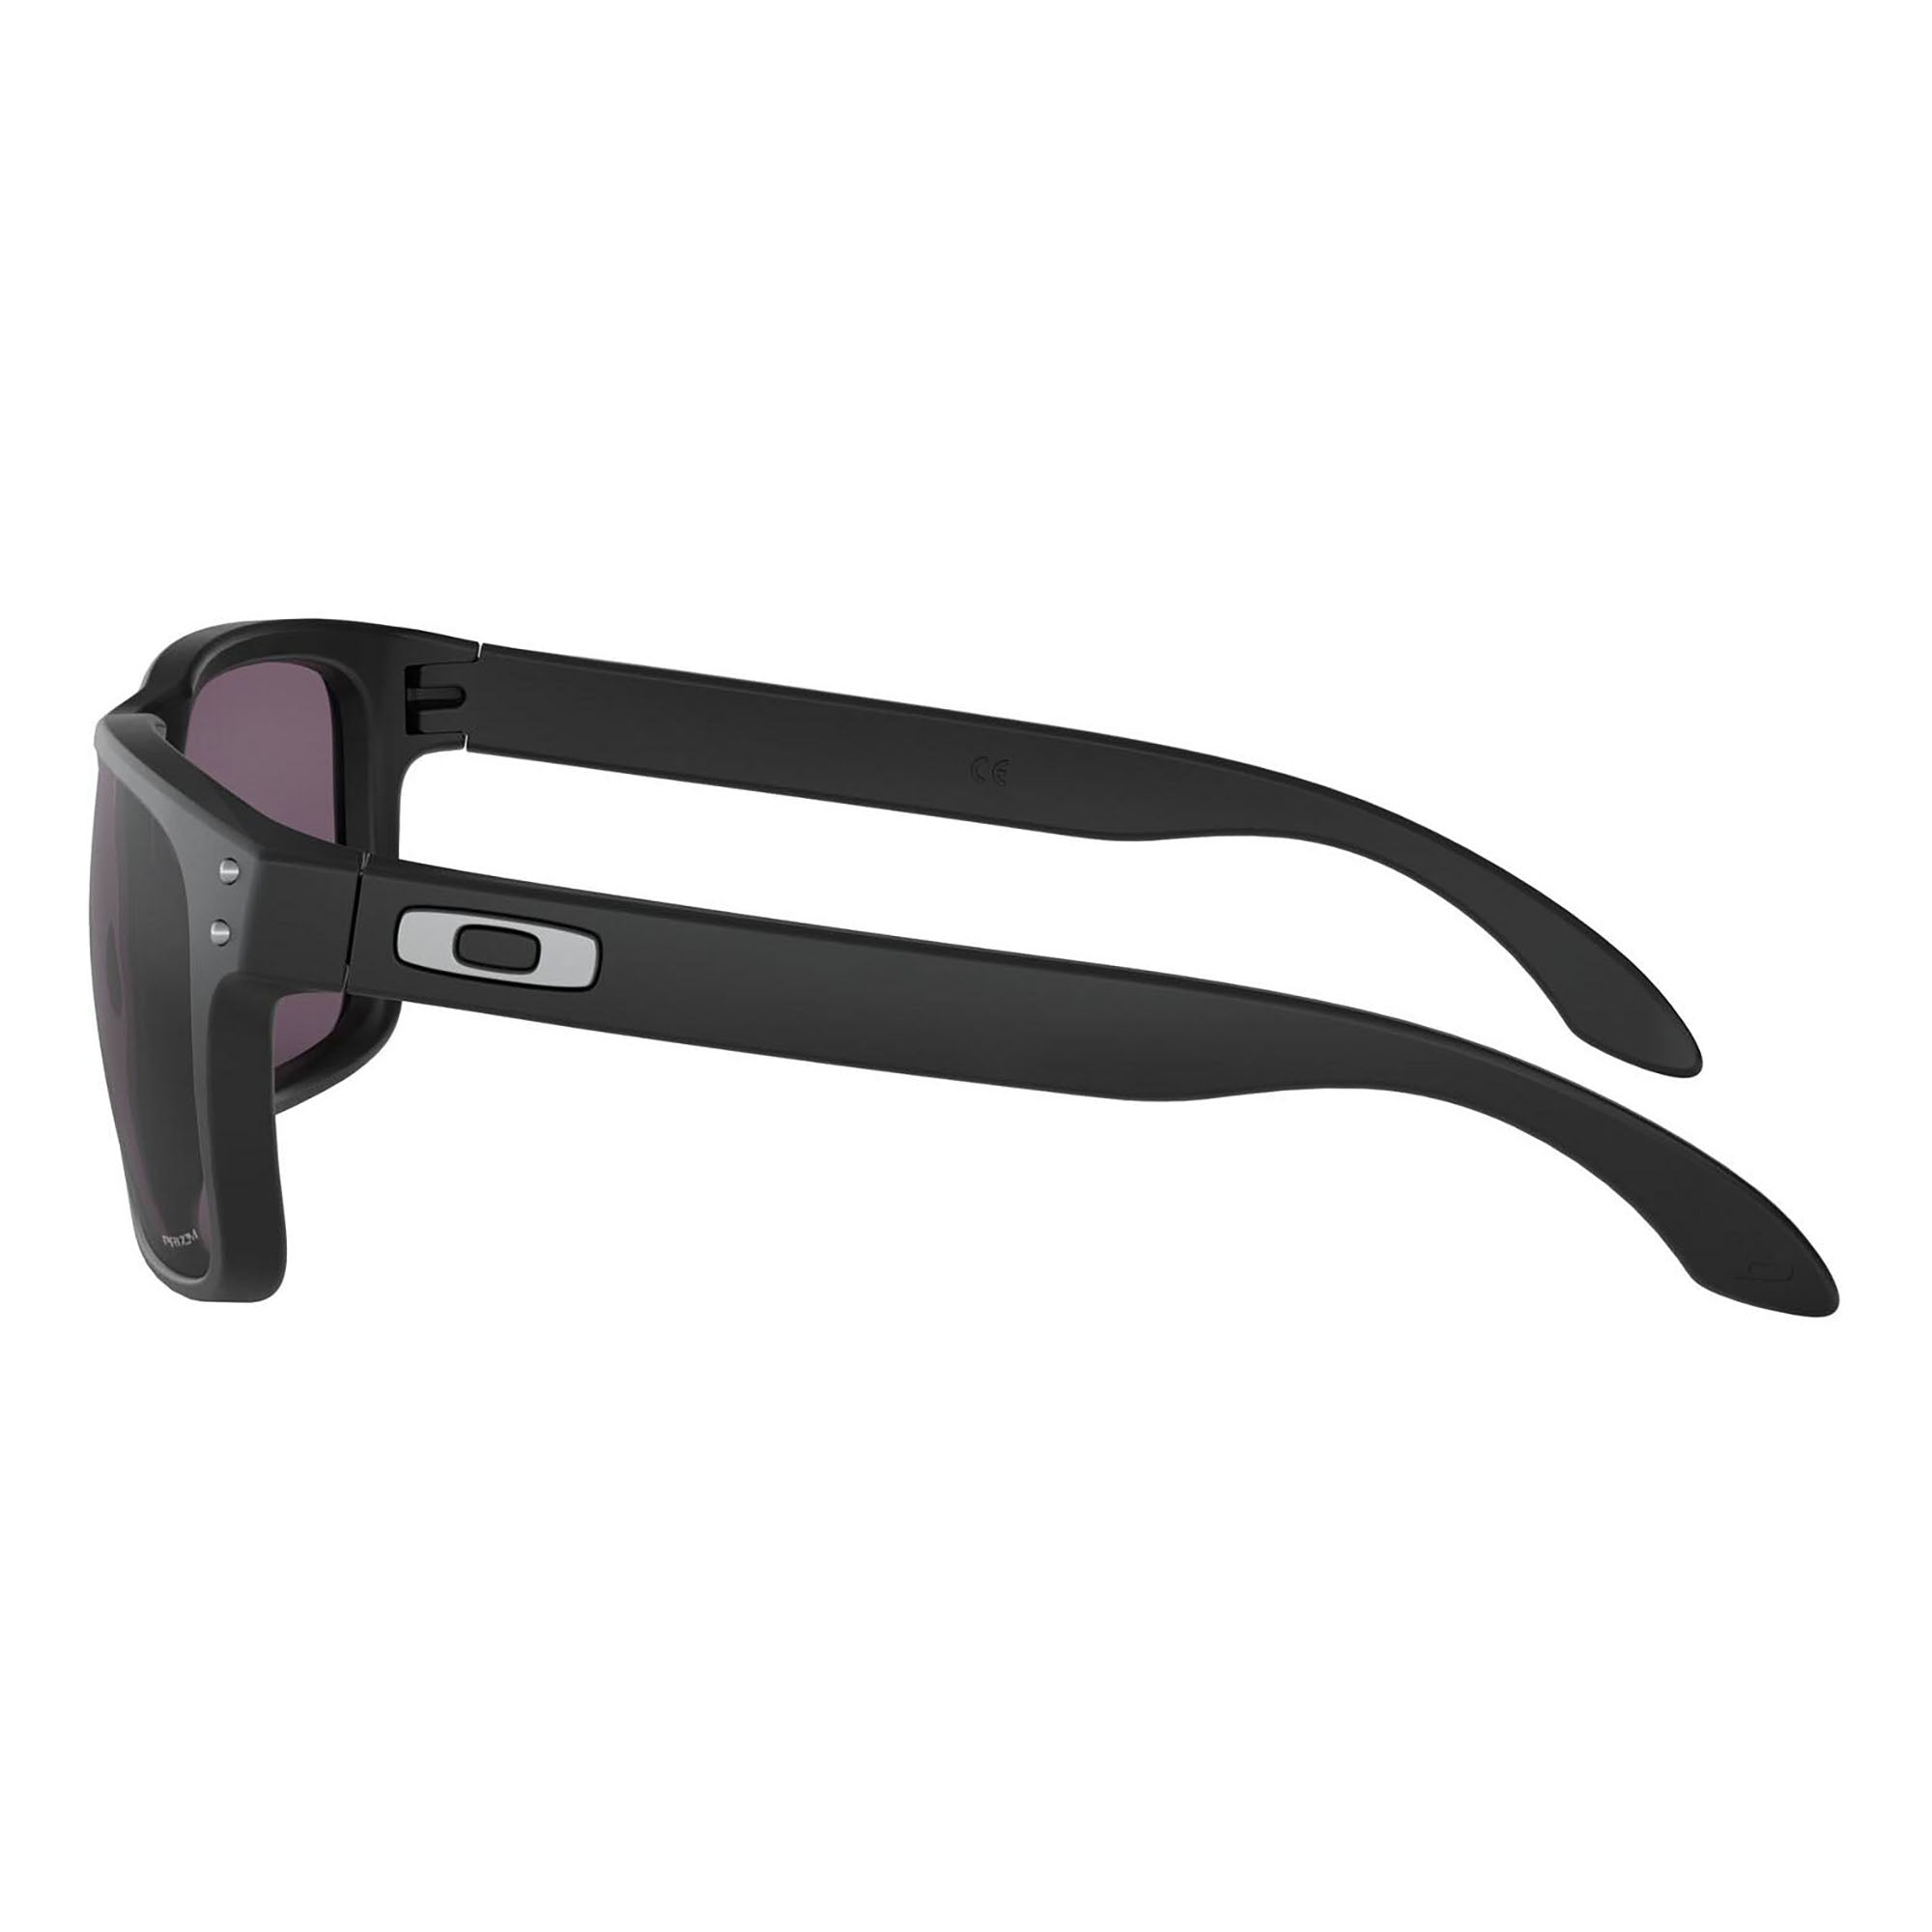 Holbrook™ Prizm Grey Lenses, Matte Black Frame Sunglasses